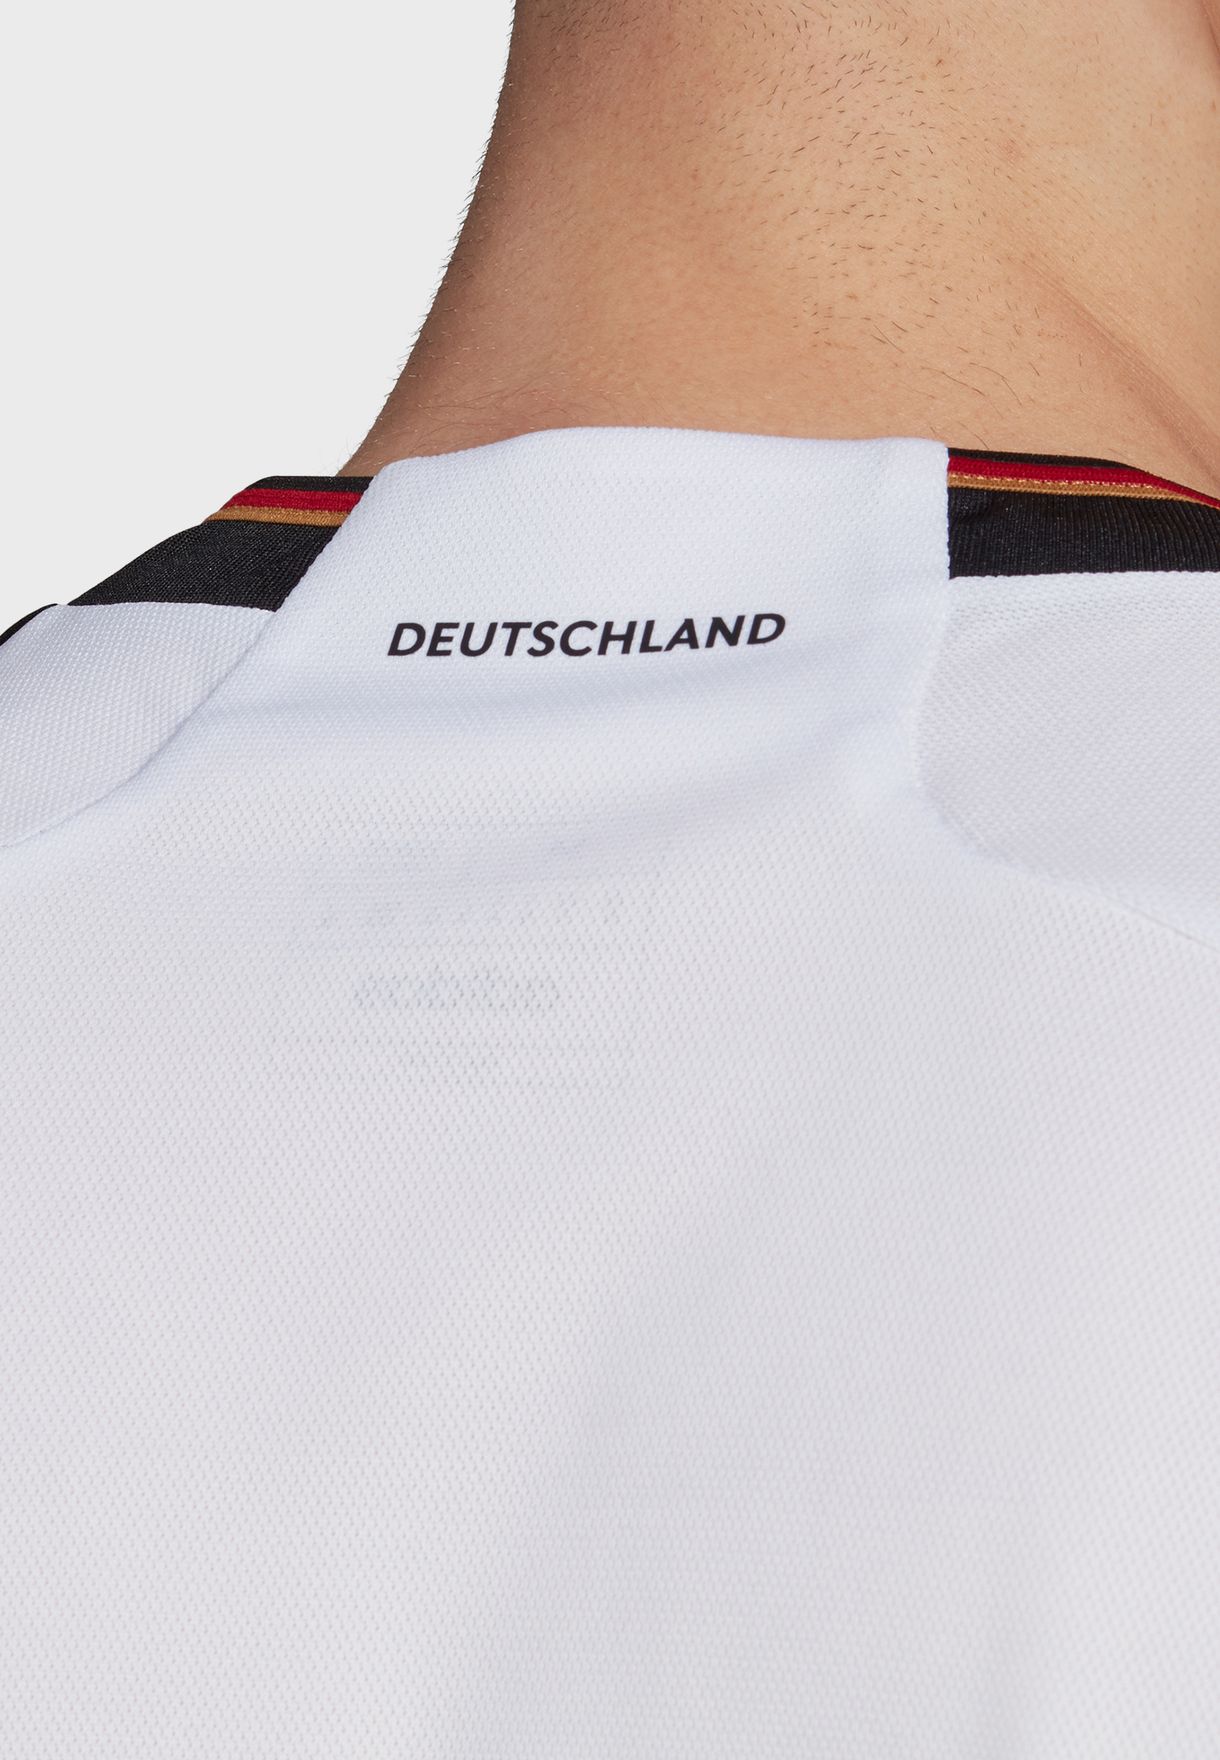 تيشيرت بشعار ألمانيا